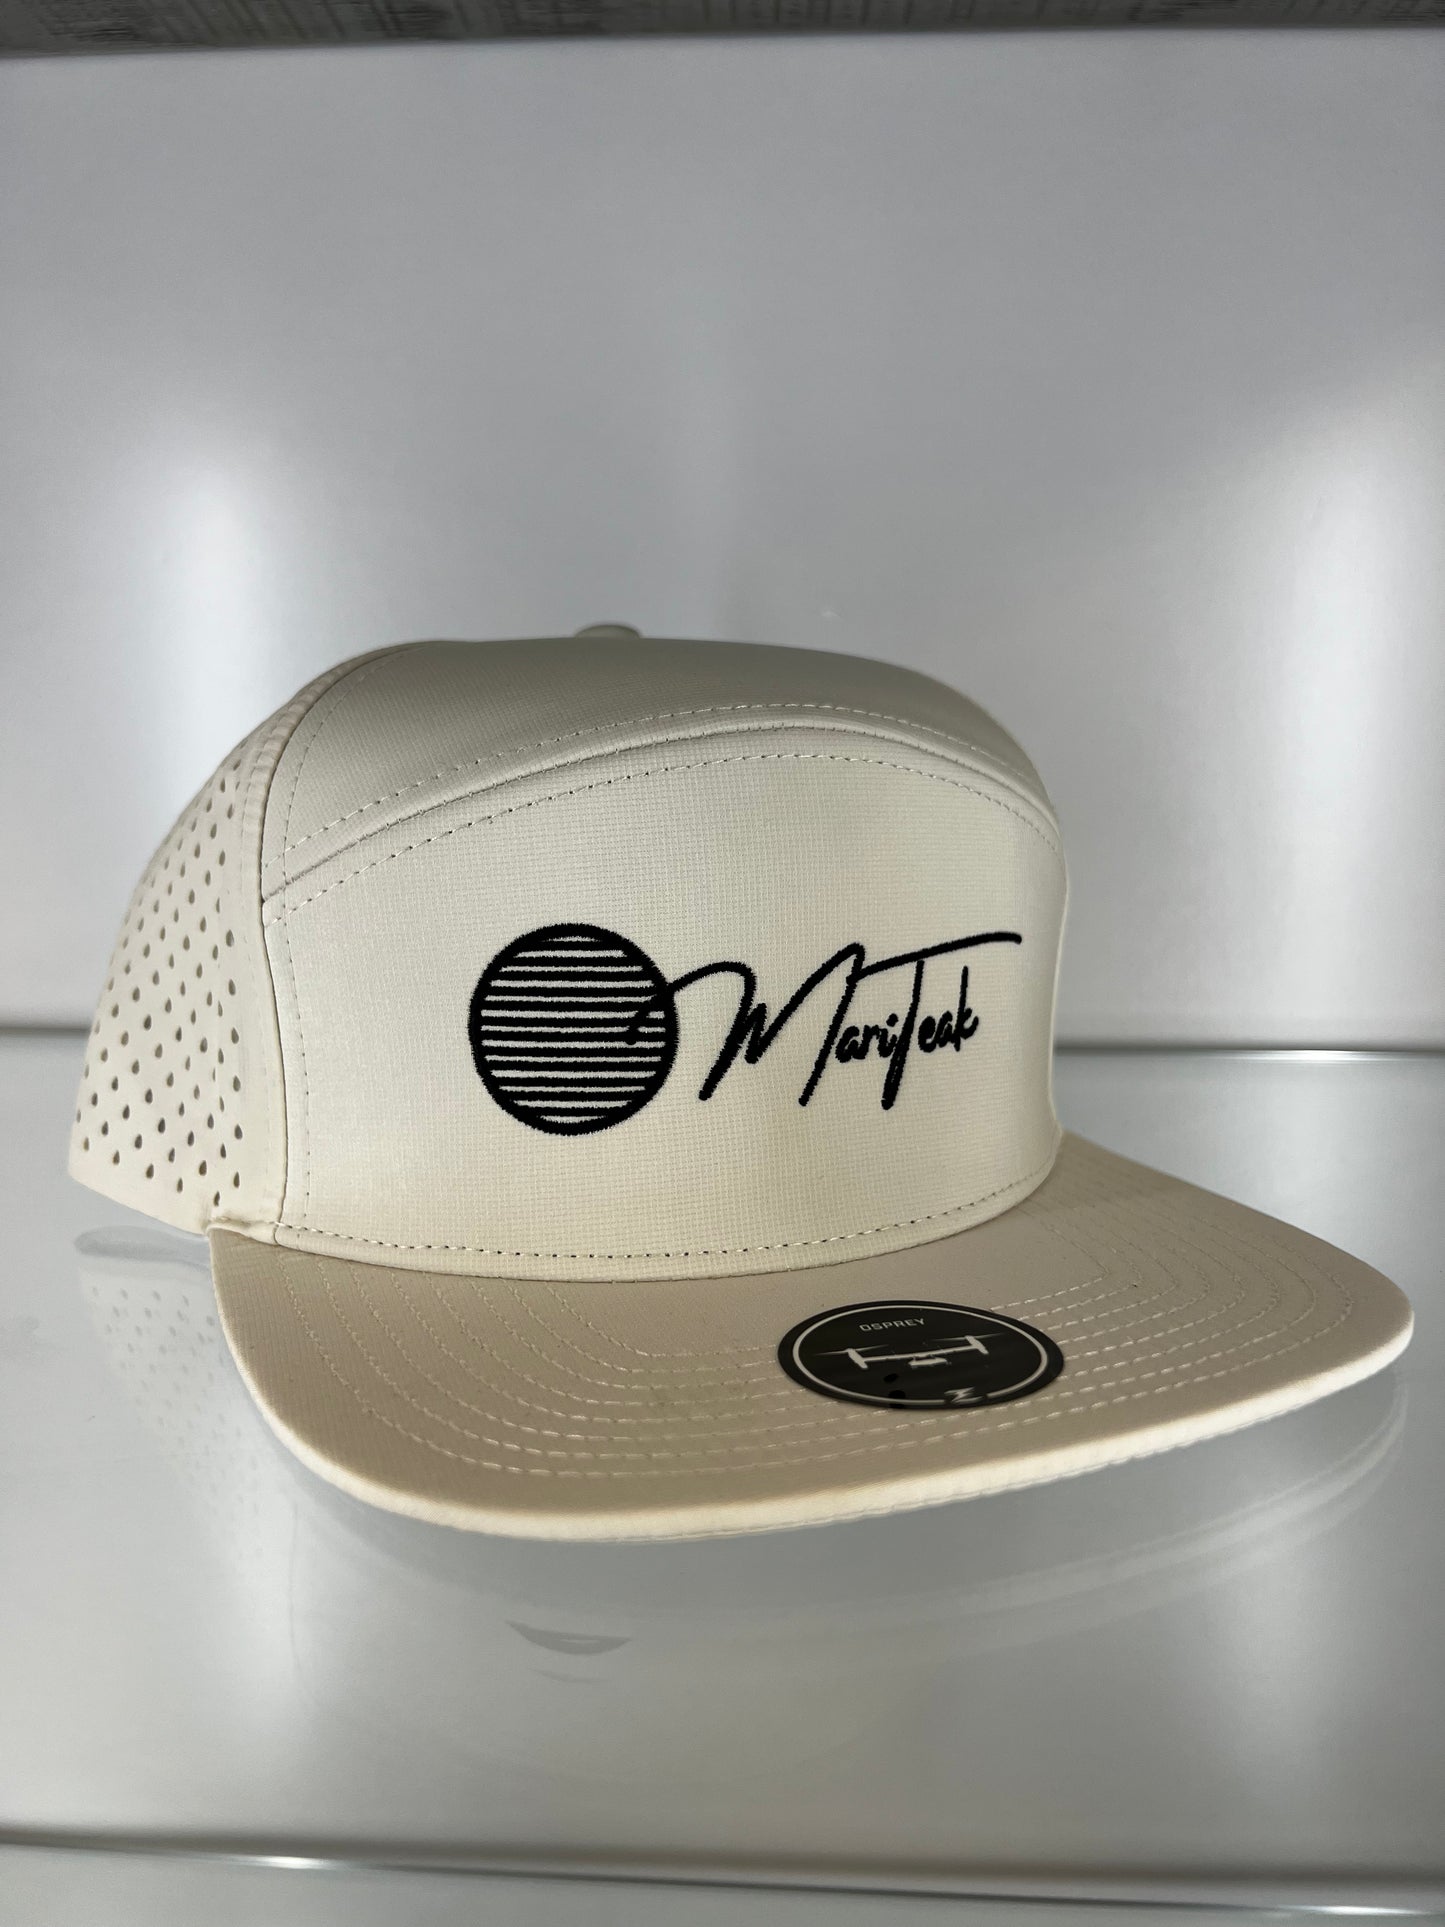 MariTeak "Osprey" Hat